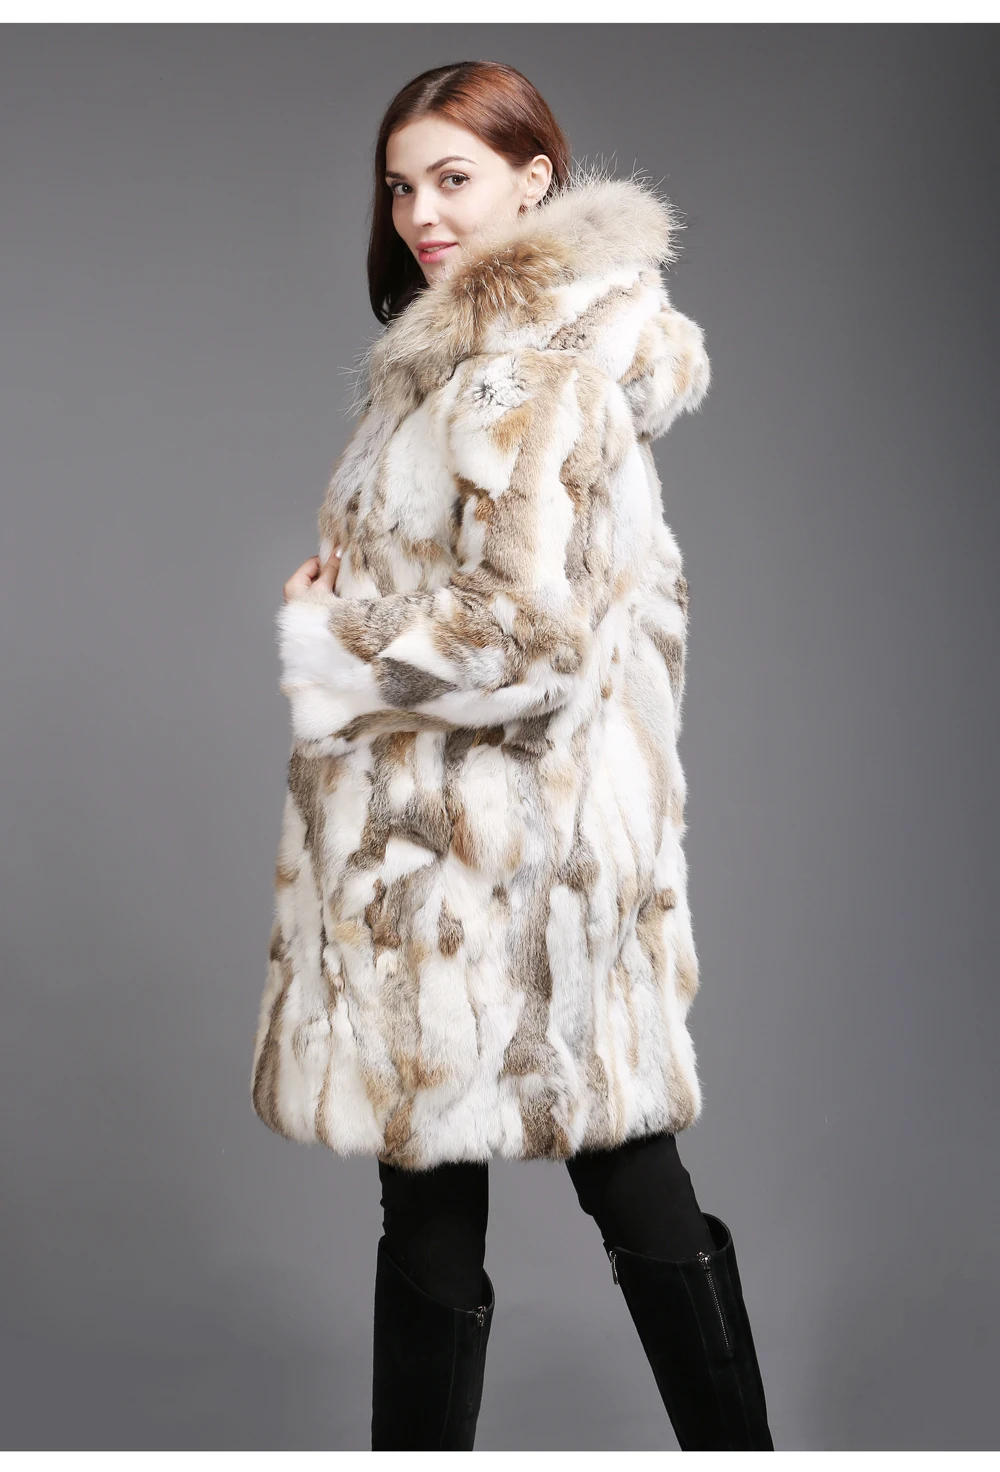 Женское зимнее пальто из меха кролика, натуральный мех кролика, куртка с капюшоном с воротником из натурального меха енота, пальто из натурального кроличьего меха